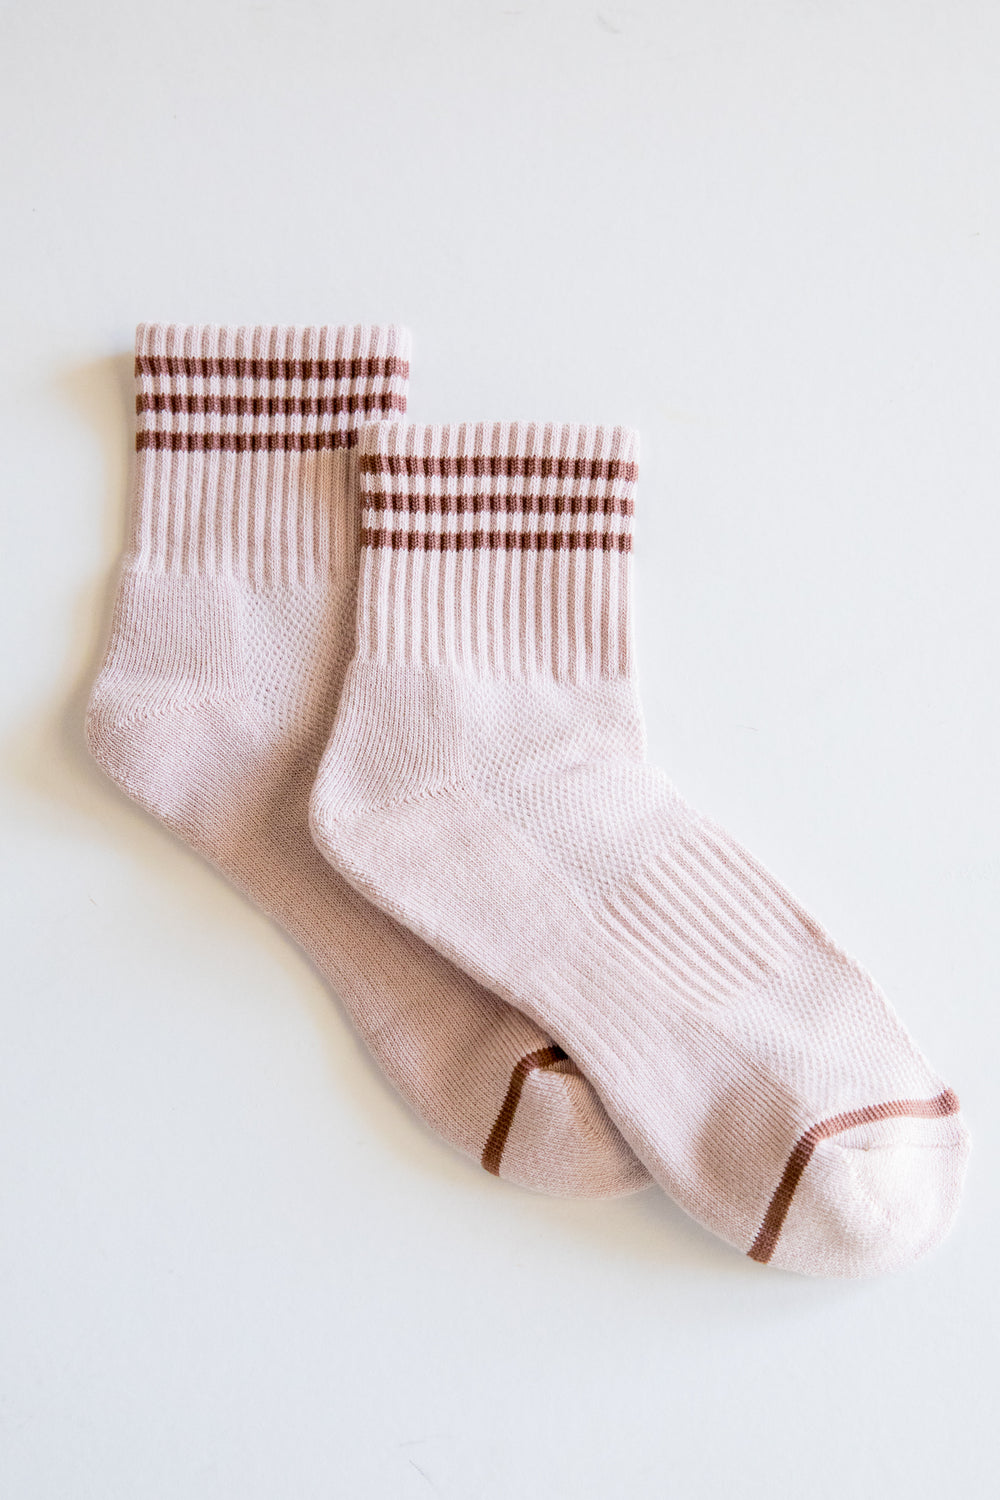 Bellini Girlfriend Socks